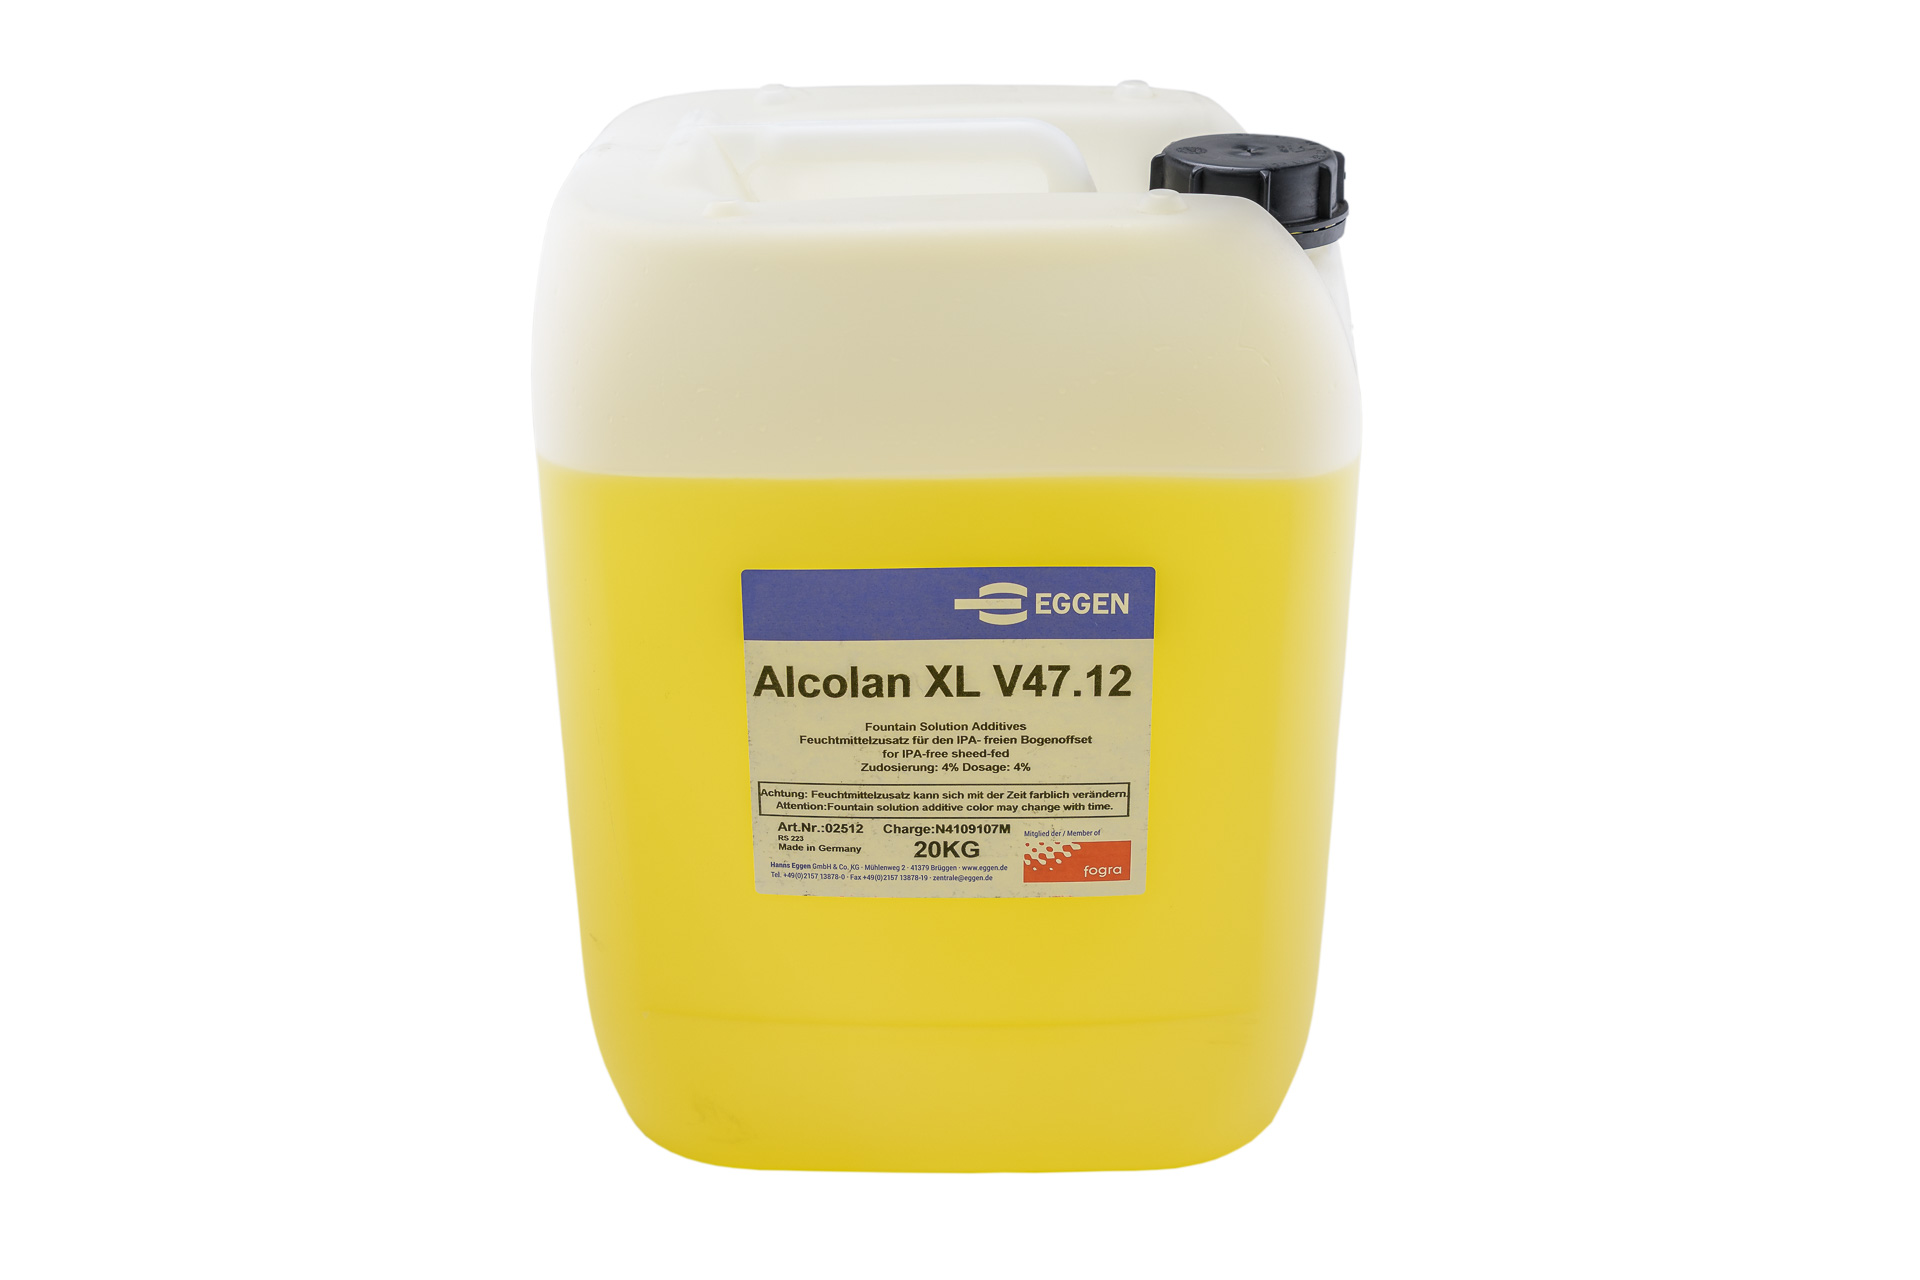 Alcolan XL V47.12